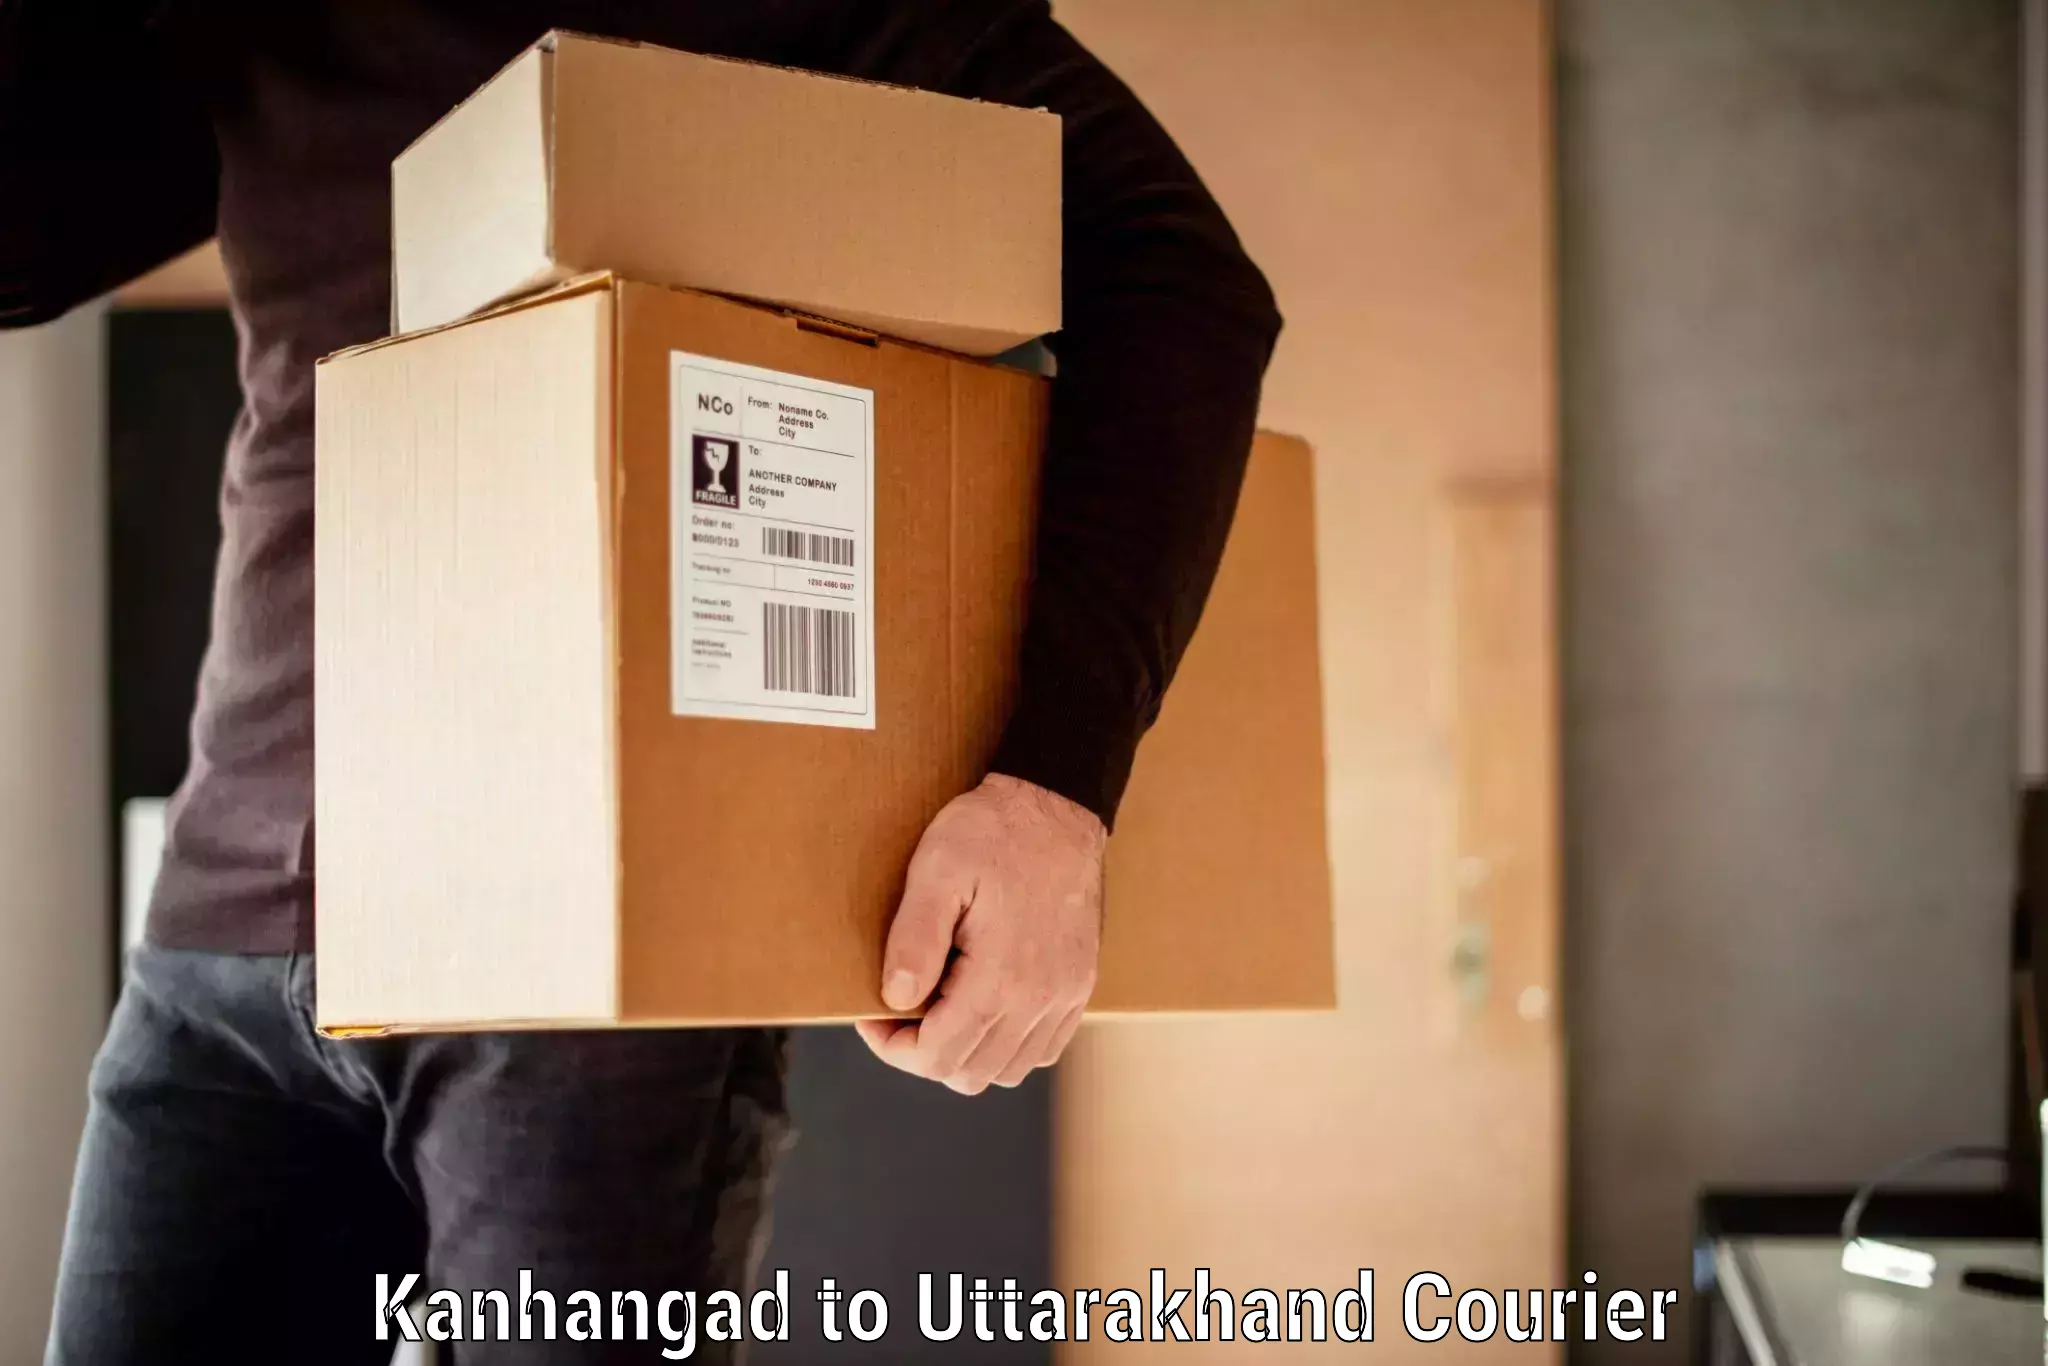 Baggage shipping experts Kanhangad to NIT Garhwal